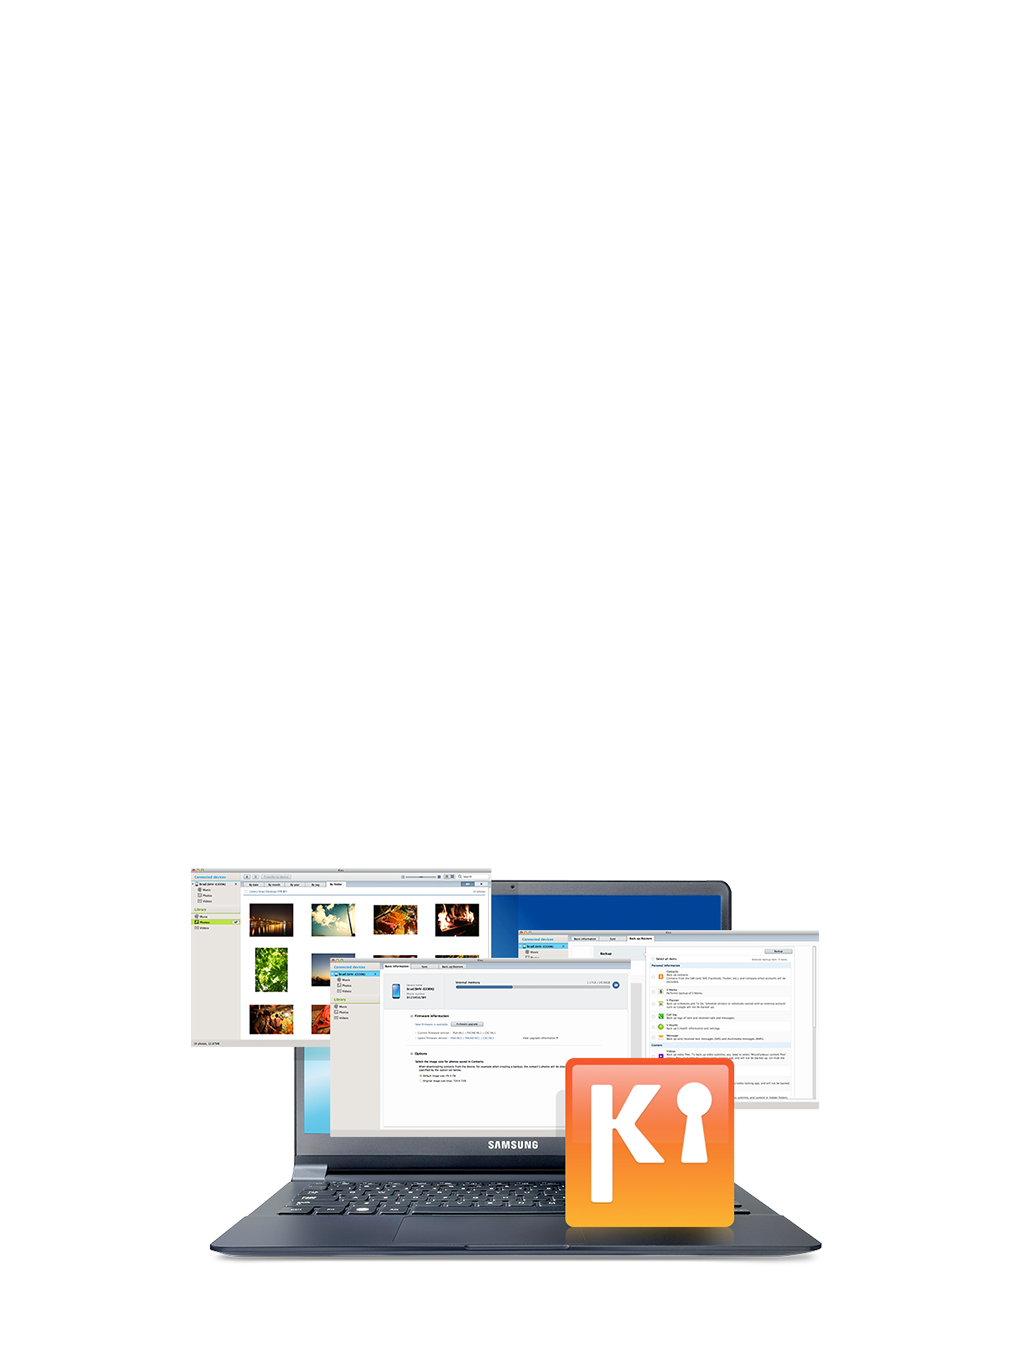 Mac 2 Web Key Download